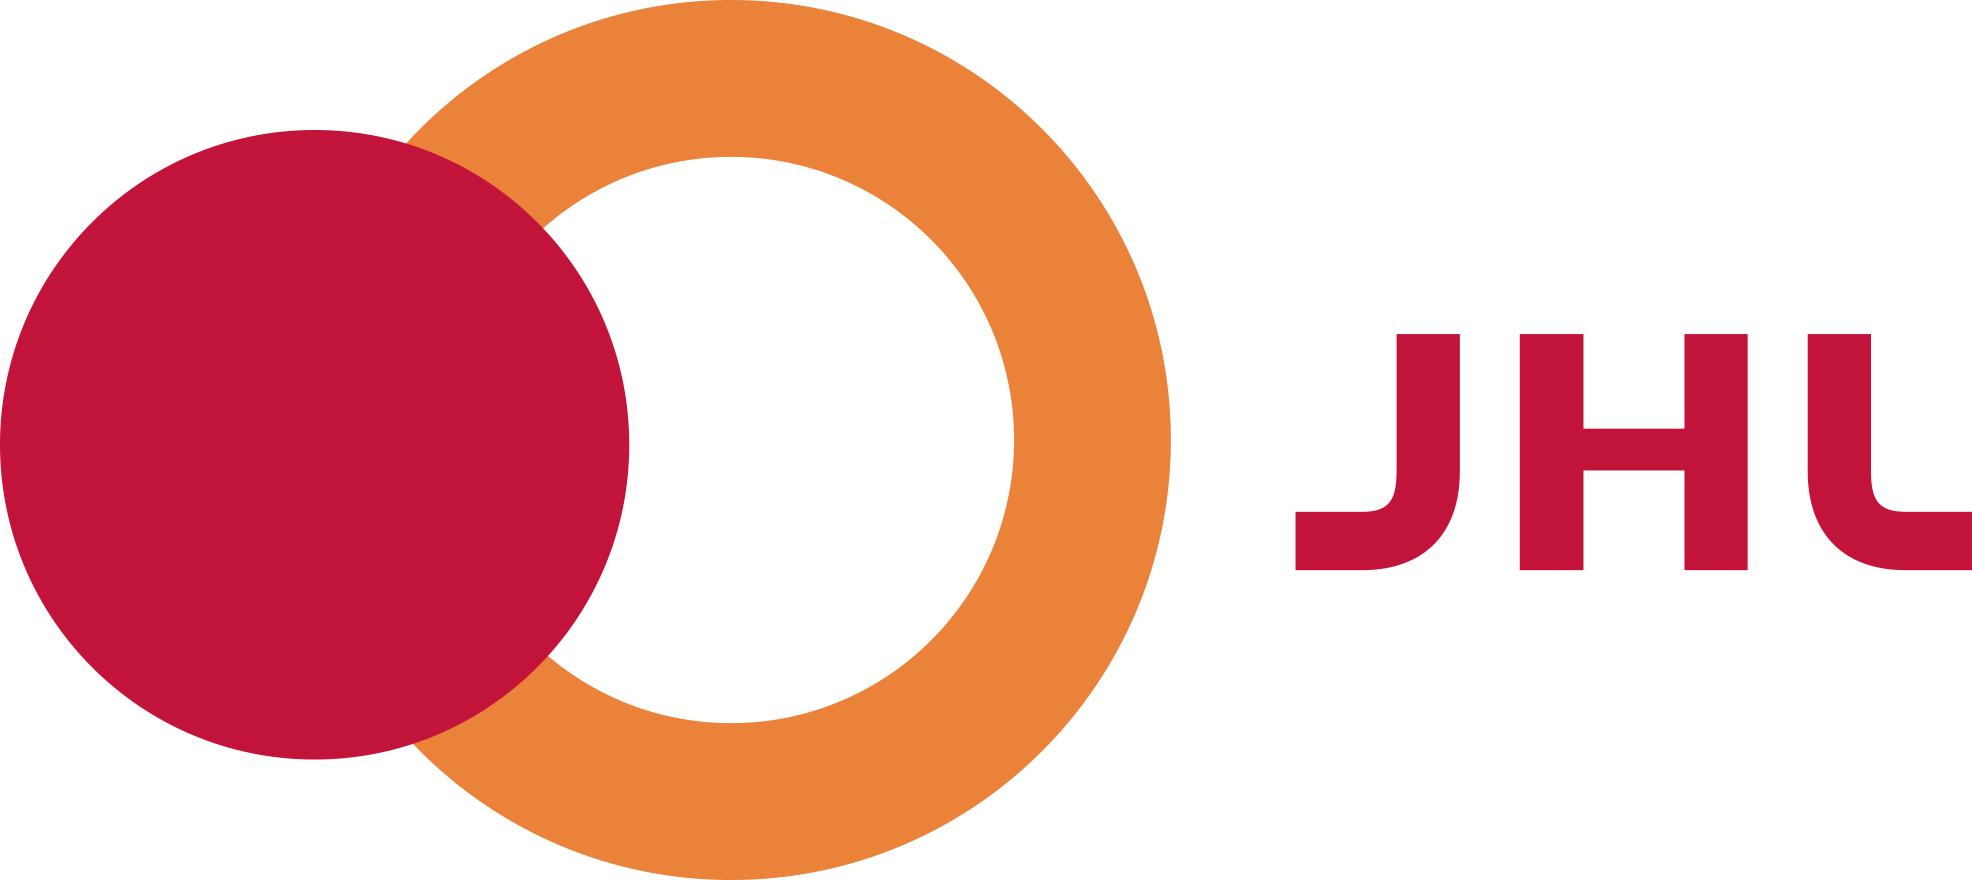 JHL:n logo, jossa on hiukan limittäin pienempi punainen ympyrä ja isompi oranssi ympyrä ja niiden vieressä teksti JHL.